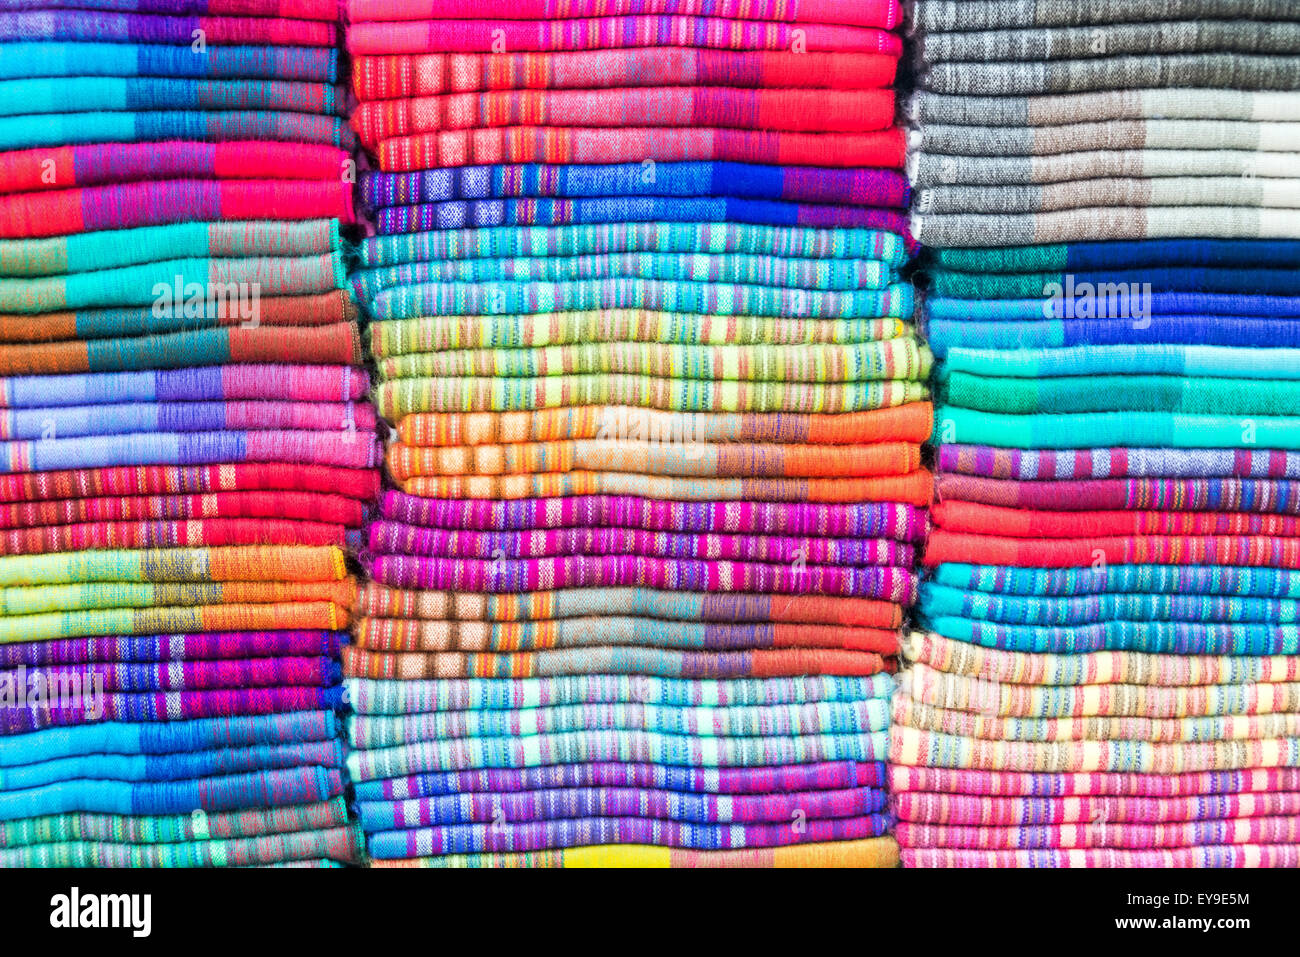 Les couvertures colorées faites de la laine d'alpaga dans le célèbre marché d'Otavalo, Équateur Banque D'Images